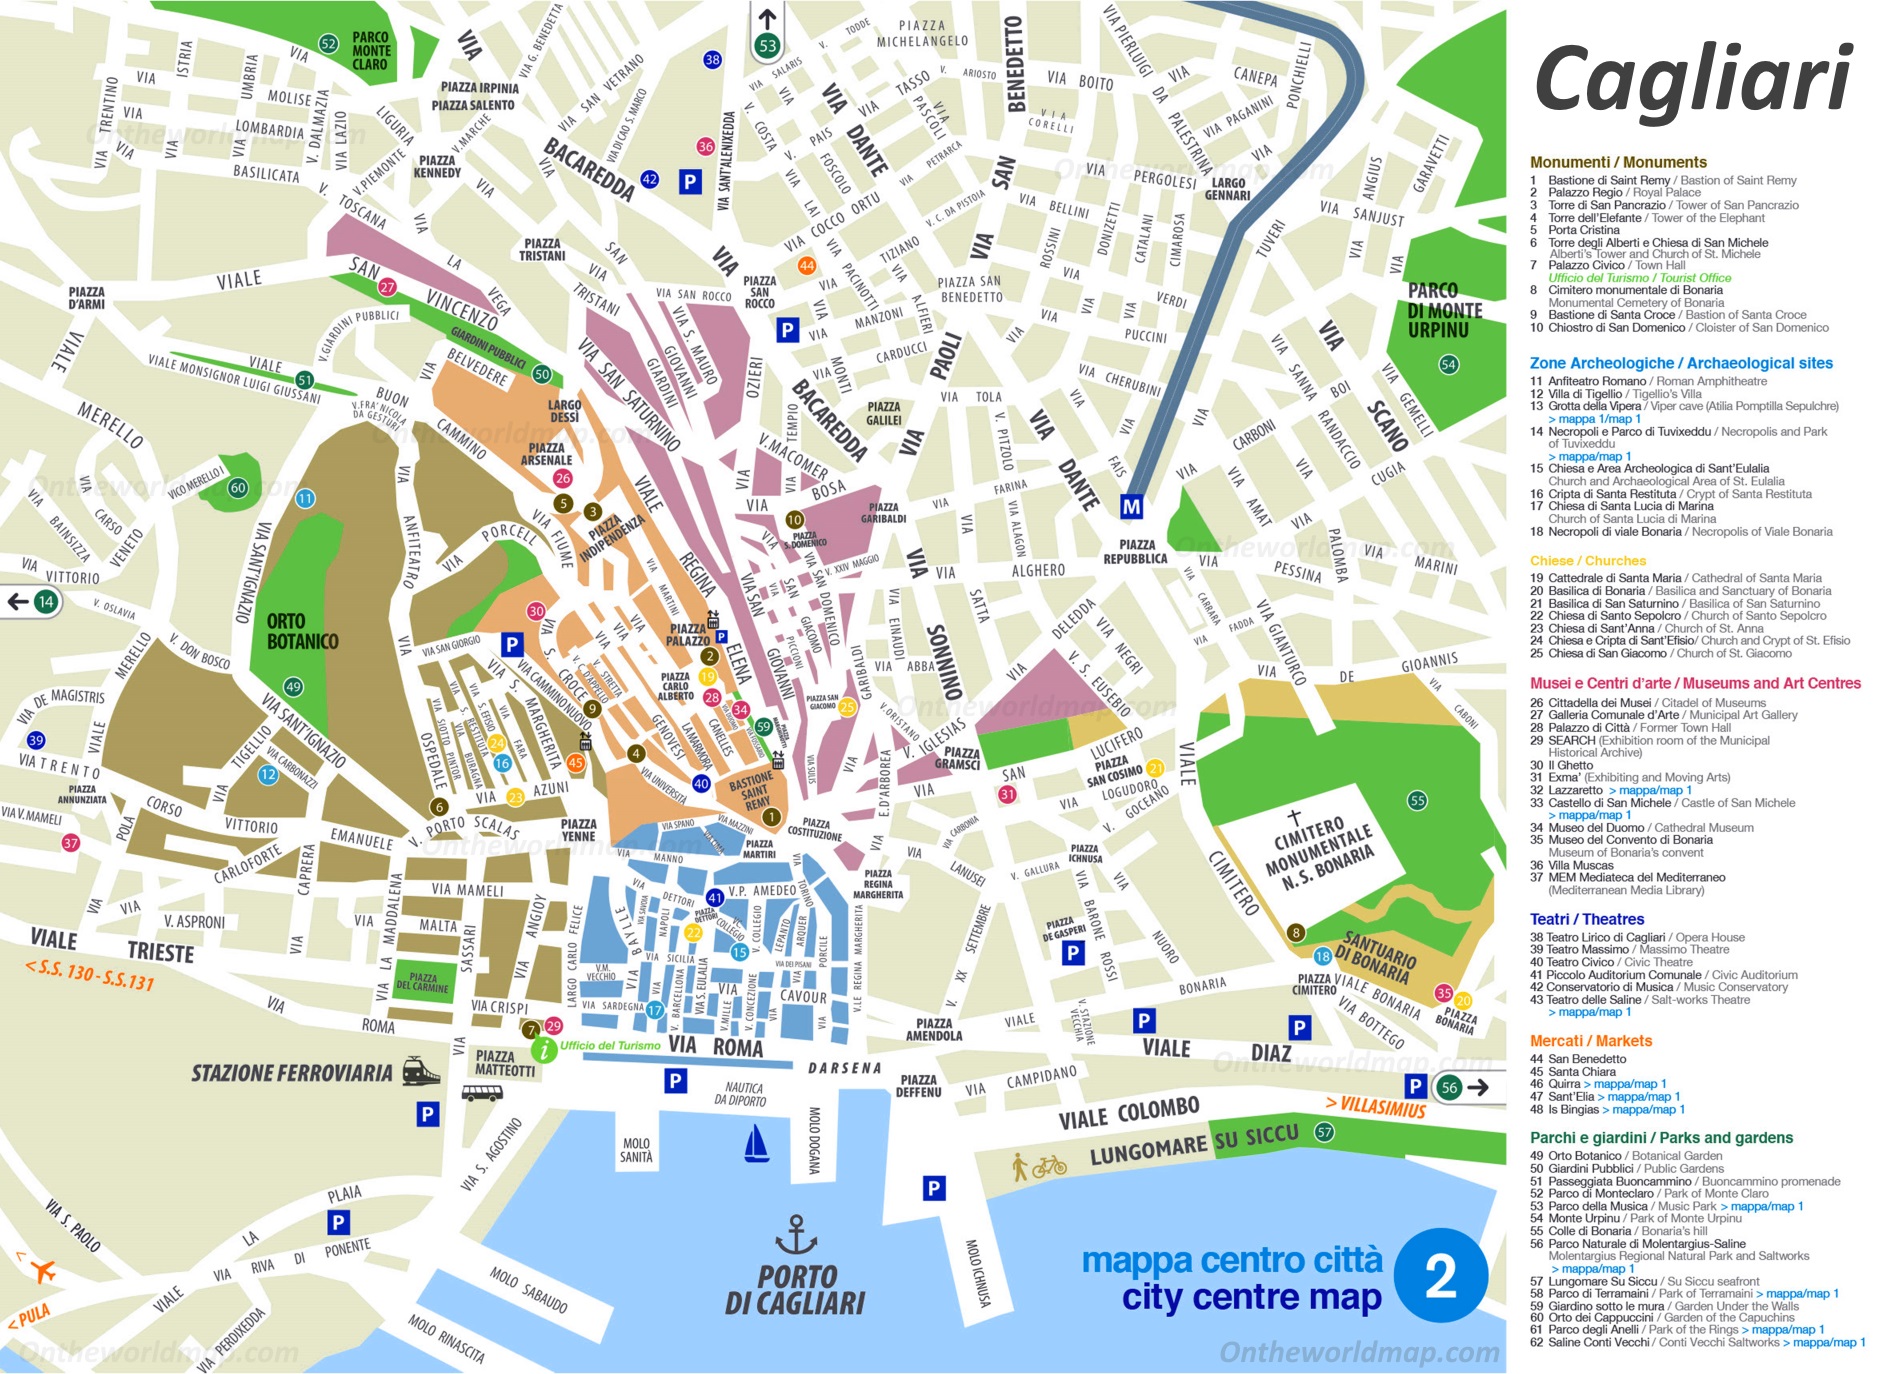 The map of Cagliari